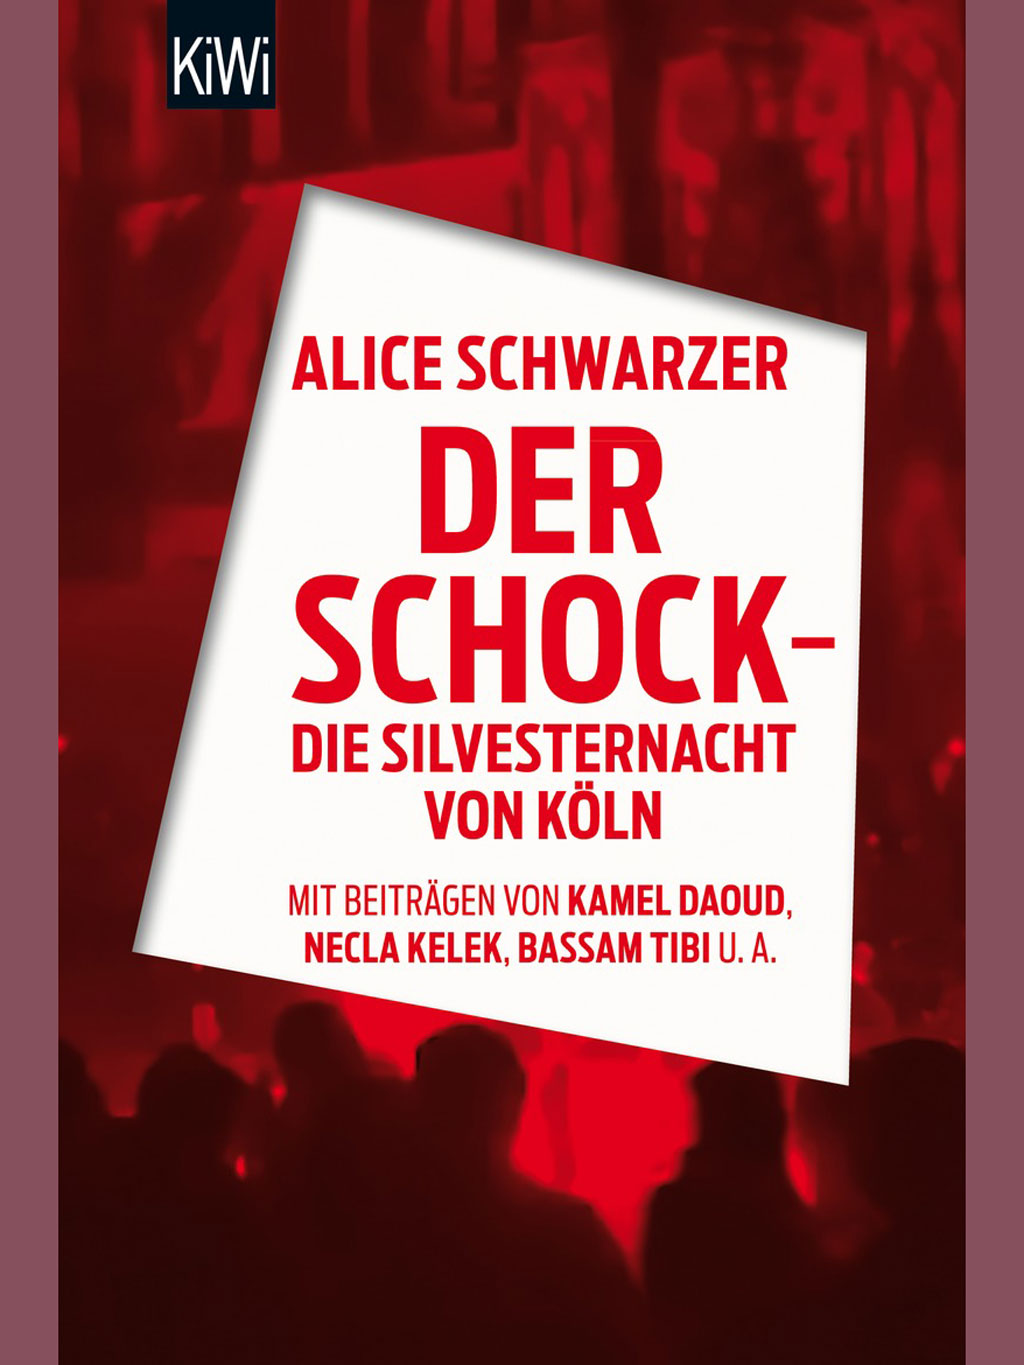 Alice Schwarzer's "Der Schock - die Silvesternacht in Köln" (published by KiWi, Kiepenheuer und Witsch)